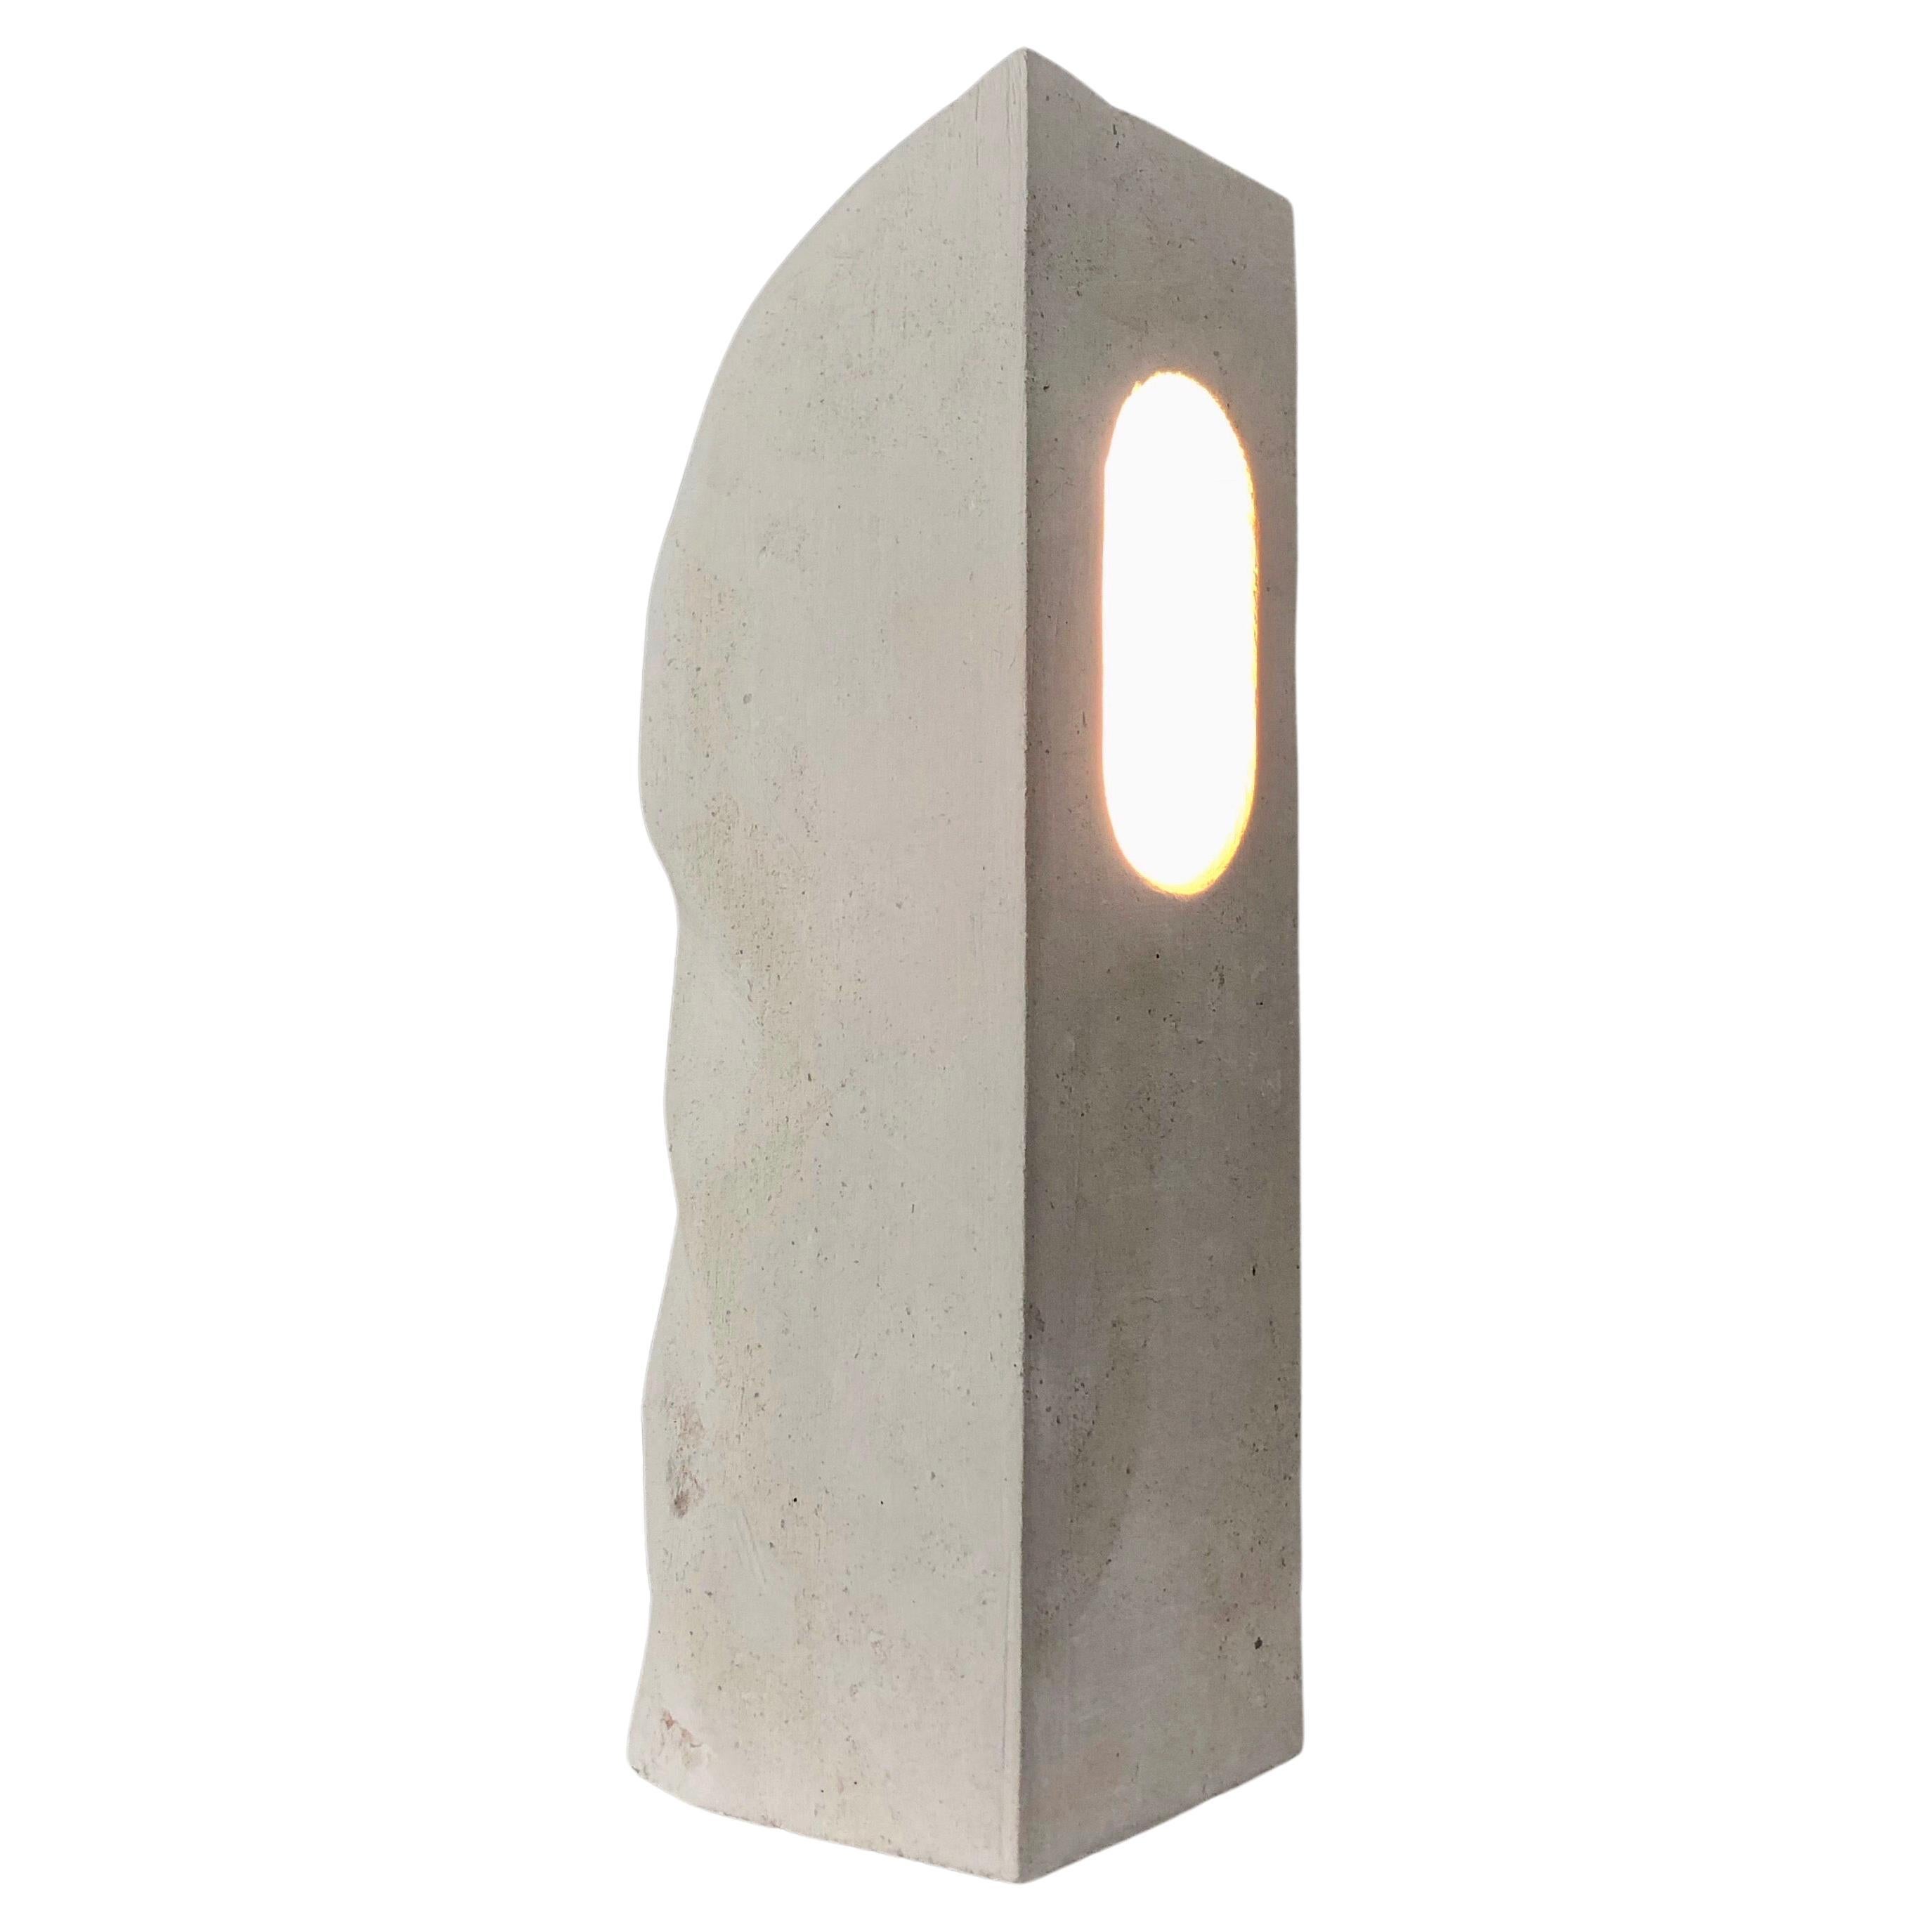 Eine Lampe aus massivem, geschnitztem Kalkstein von Michel Bonhomme, Frankreich. 

Vollständig neu verkabelt mit Schalter und E14-Steckdose.

Atemberaubende Form.